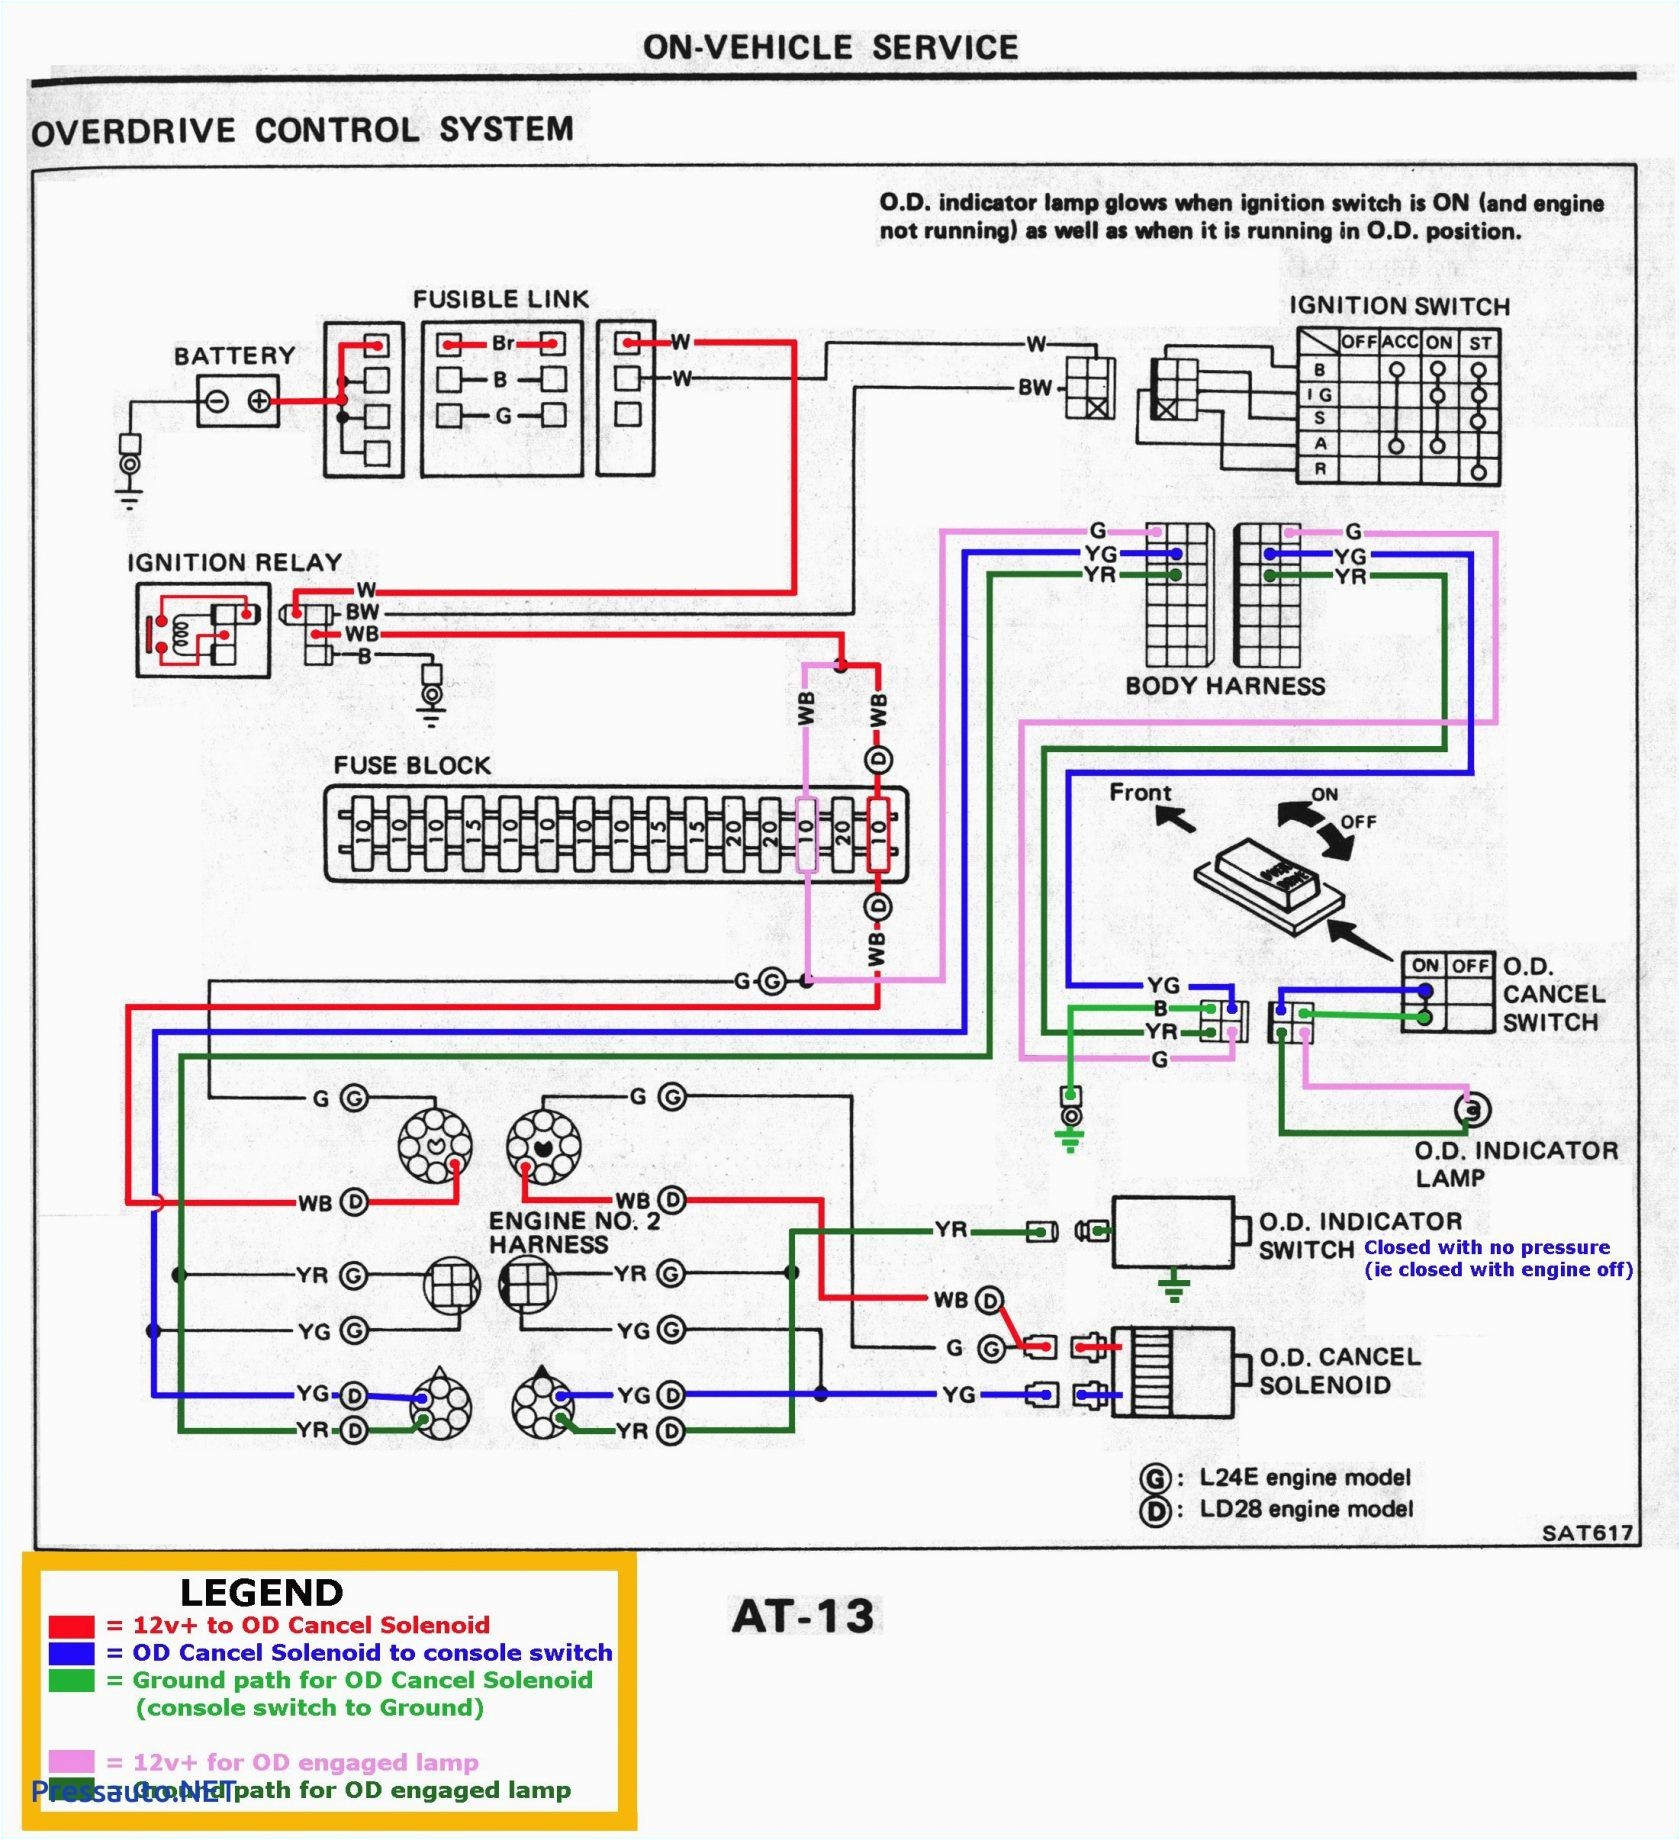 motor wiring diagram 19 wiring diagram blog 1969 corvette wiper motor wiring diagram motor wiring diagram 19